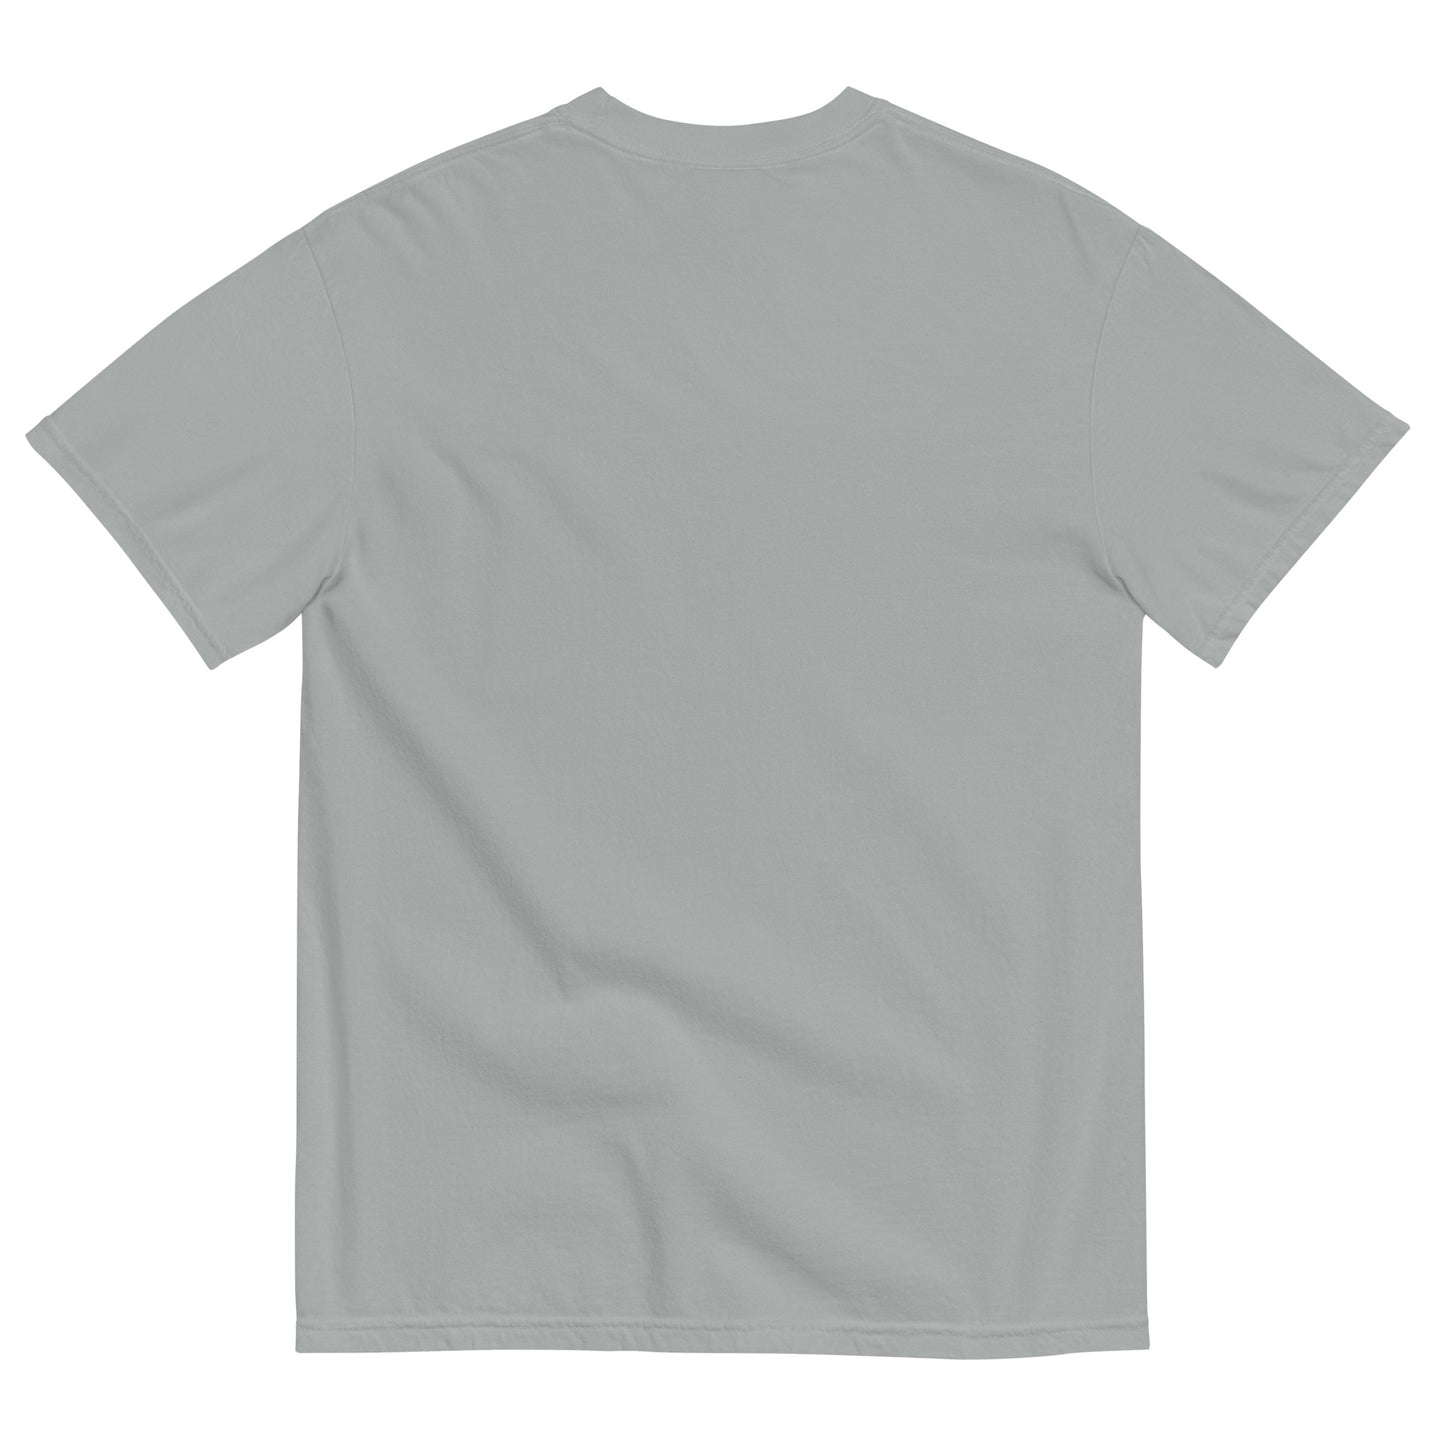 Eat. Sleep. Snooker. Unisex garment-dyed heavyweight t-shirt